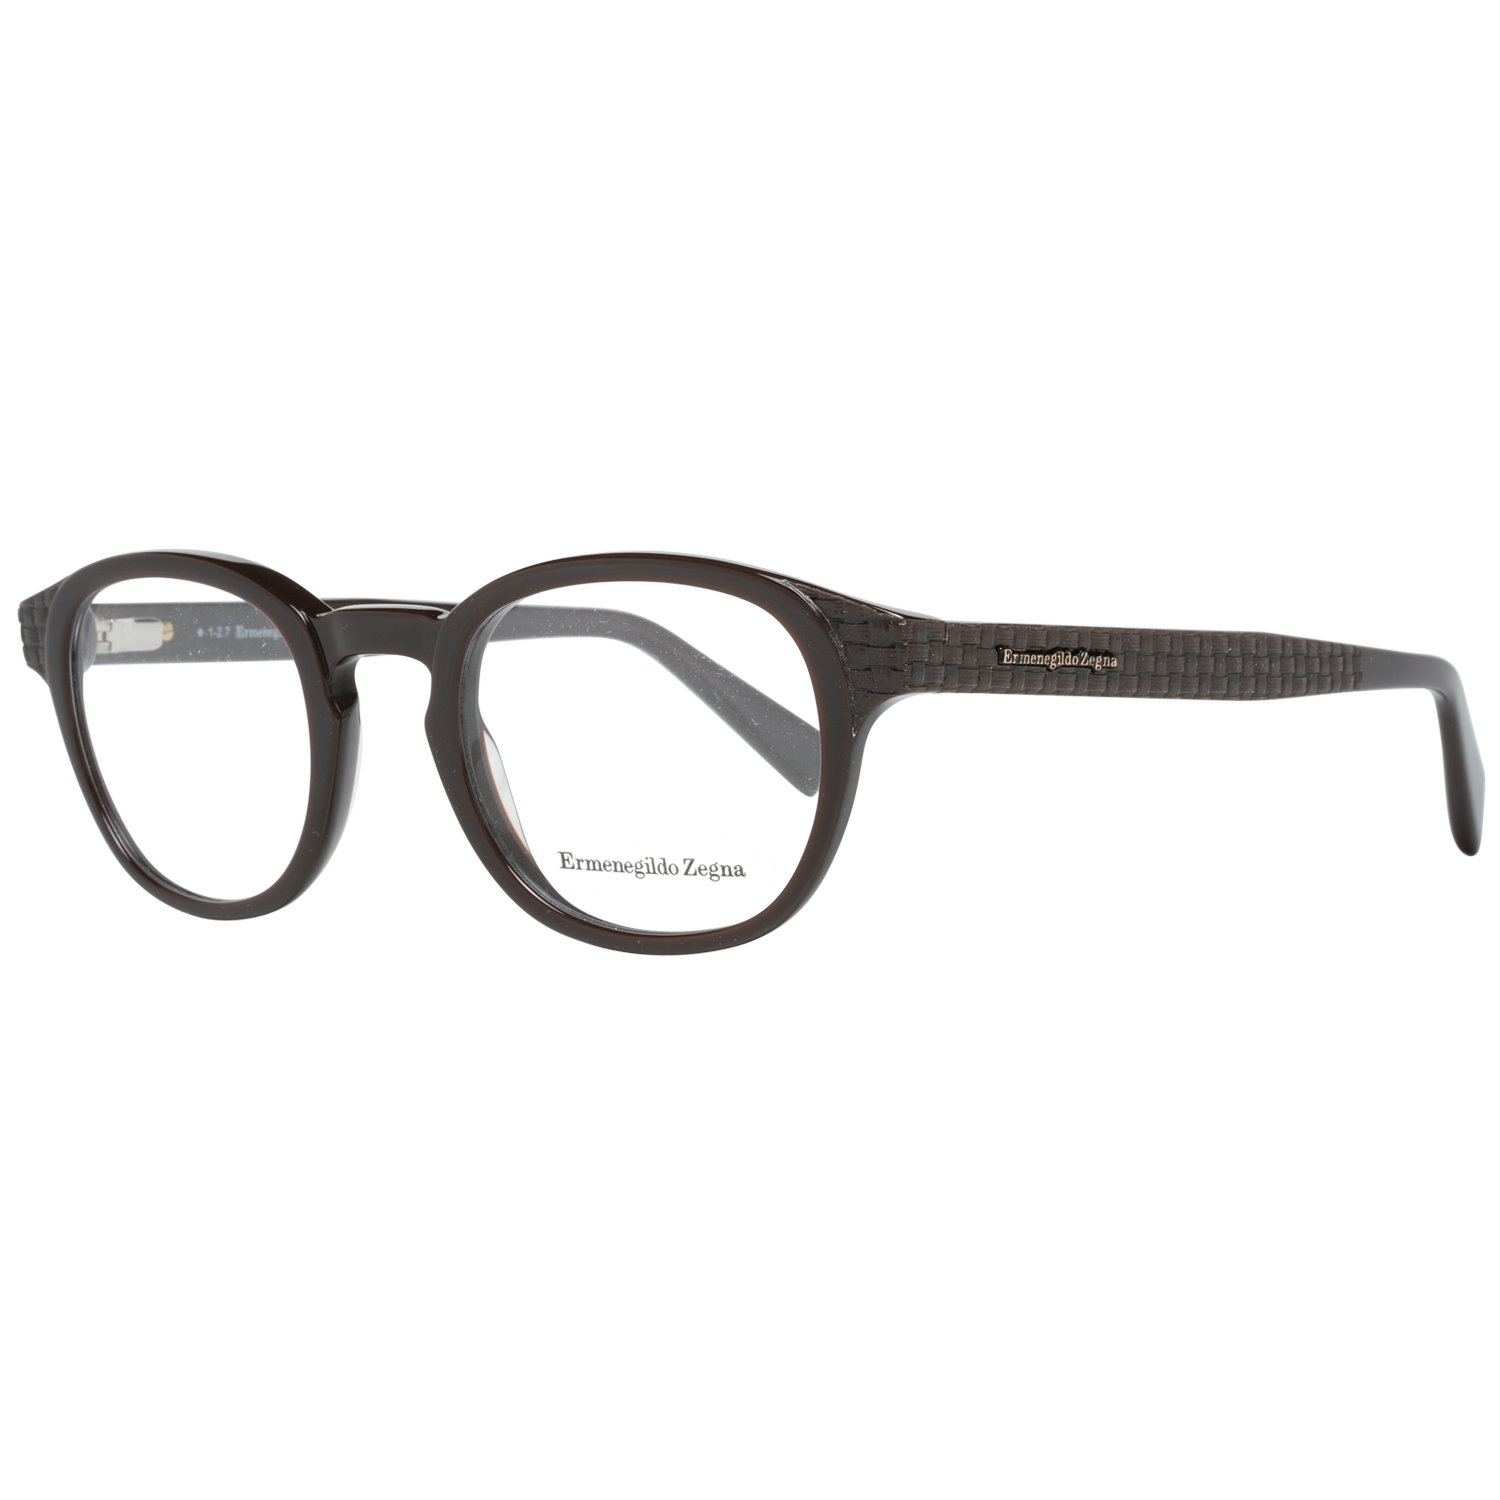 Ermenegildo Zegna Frames Ermenegildo Zegna Glasses Optical Frame EZ5108 050 48 Eyeglasses Eyewear UK USA Australia 